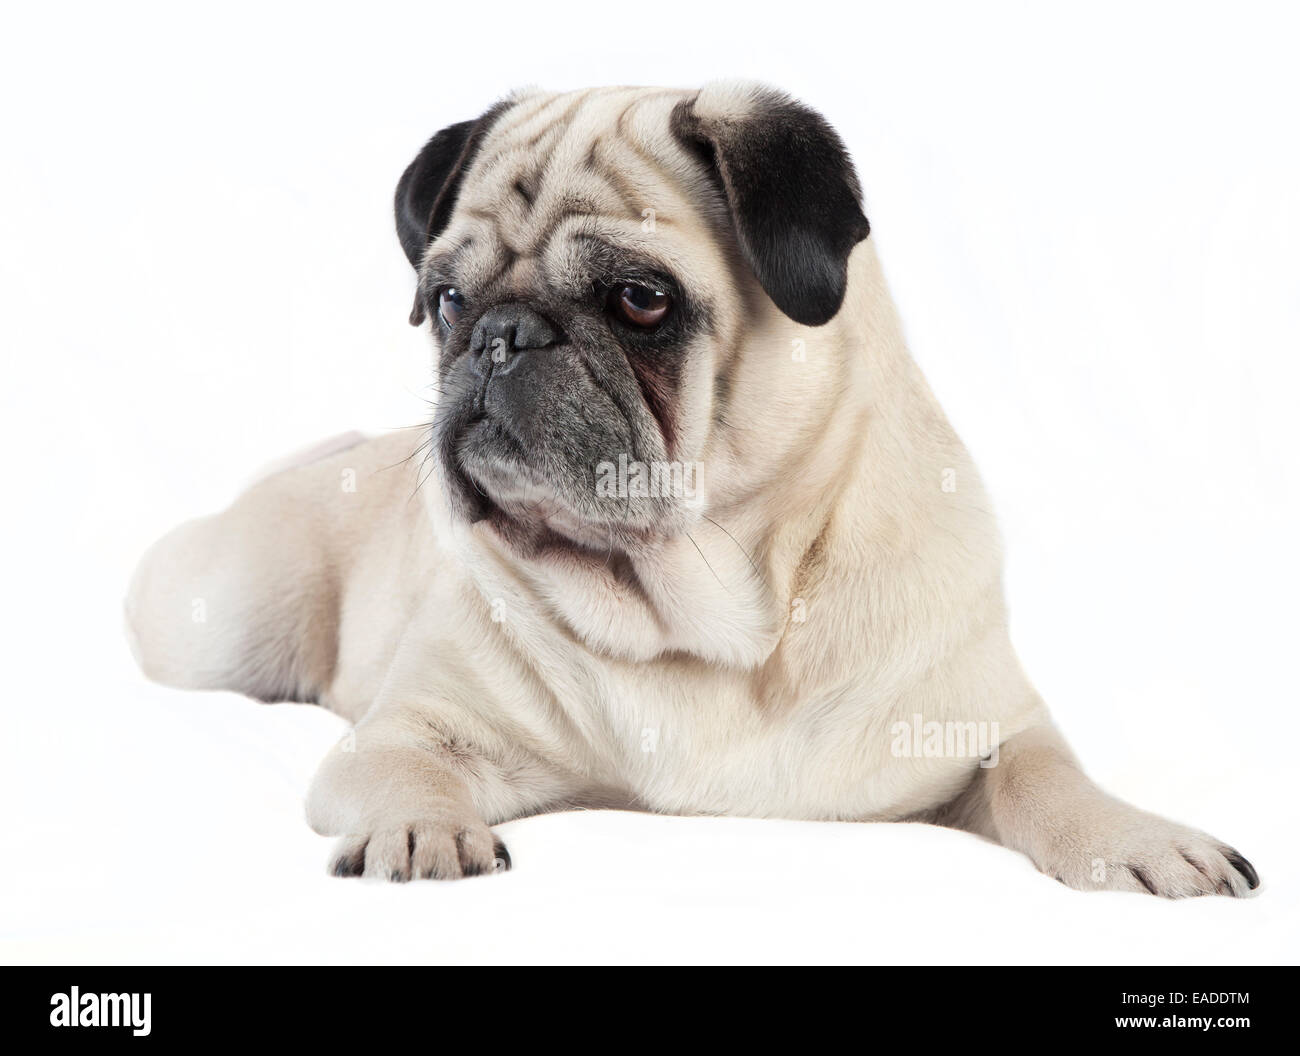 Le Pug Mâle avec fourrure de couleur crème, allongé sur une couverture blanche Banque D'Images